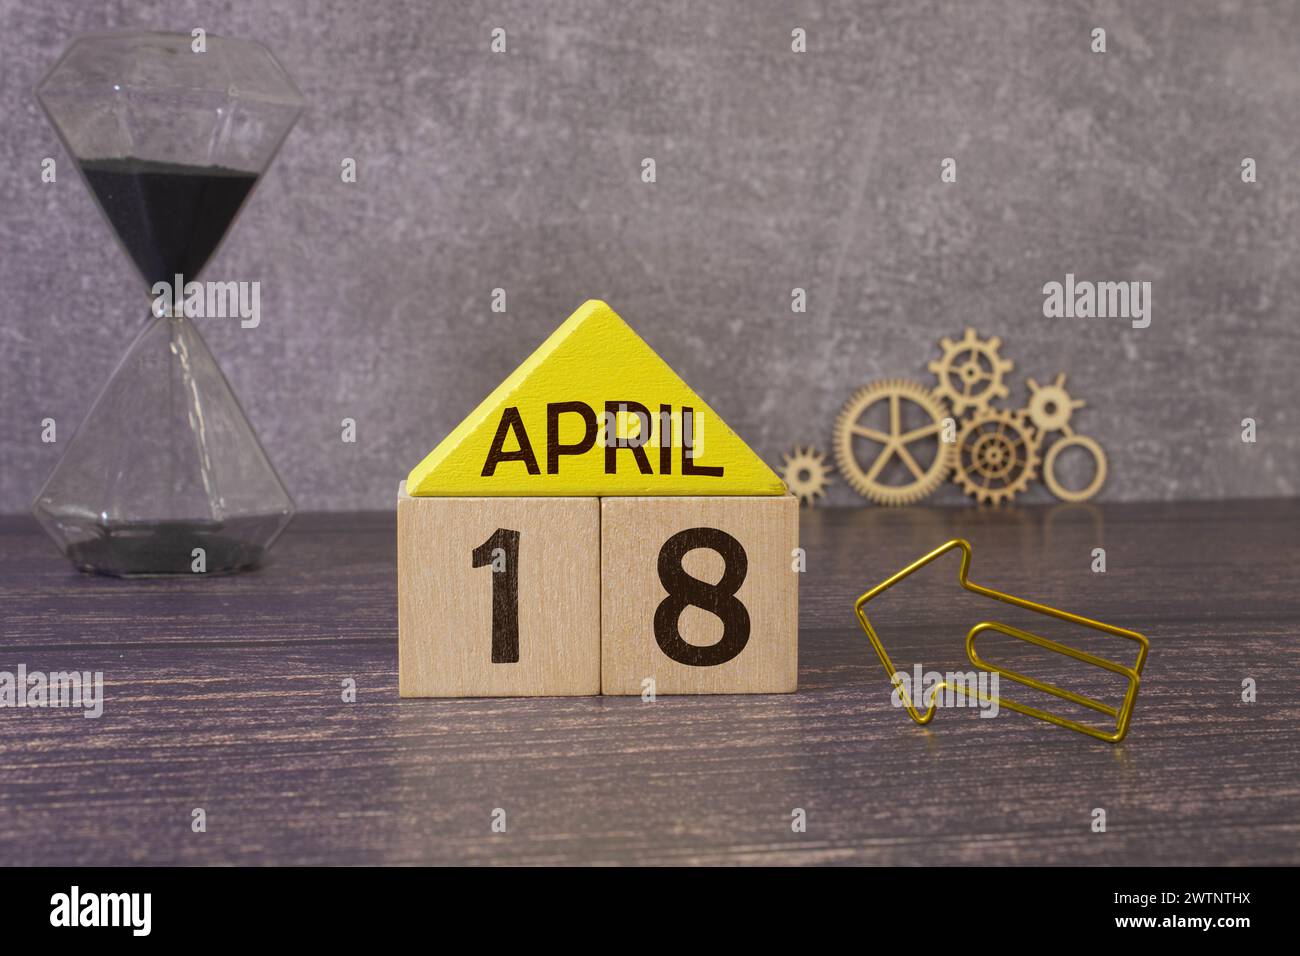 Aprile 18, disegno della copertura con cubo del numero su uno sfondo bianco e tavolo del granito Foto Stock